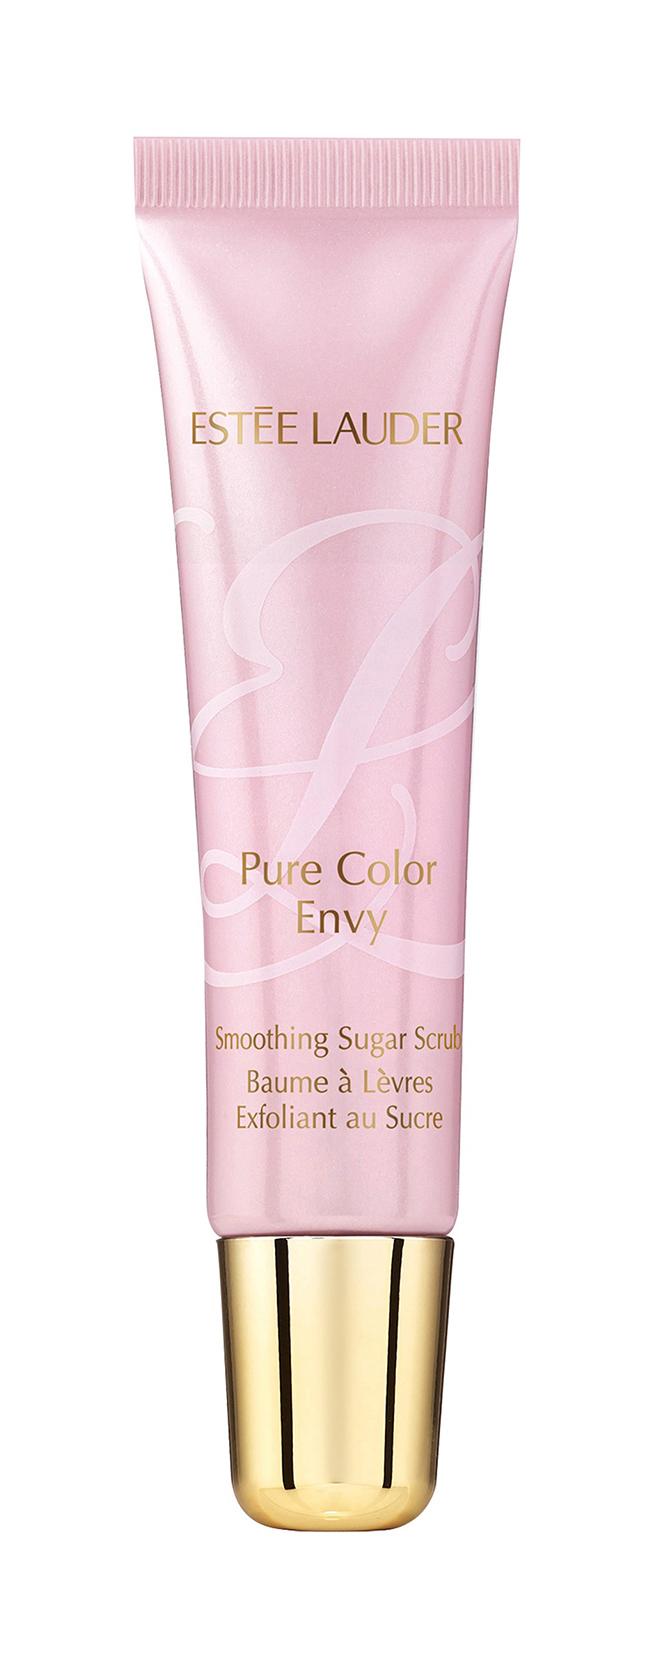 Купить Бальзам-скраб для губ Estee Lauder Pure Color Envy Smoothing Sugar Scrub, 12 г